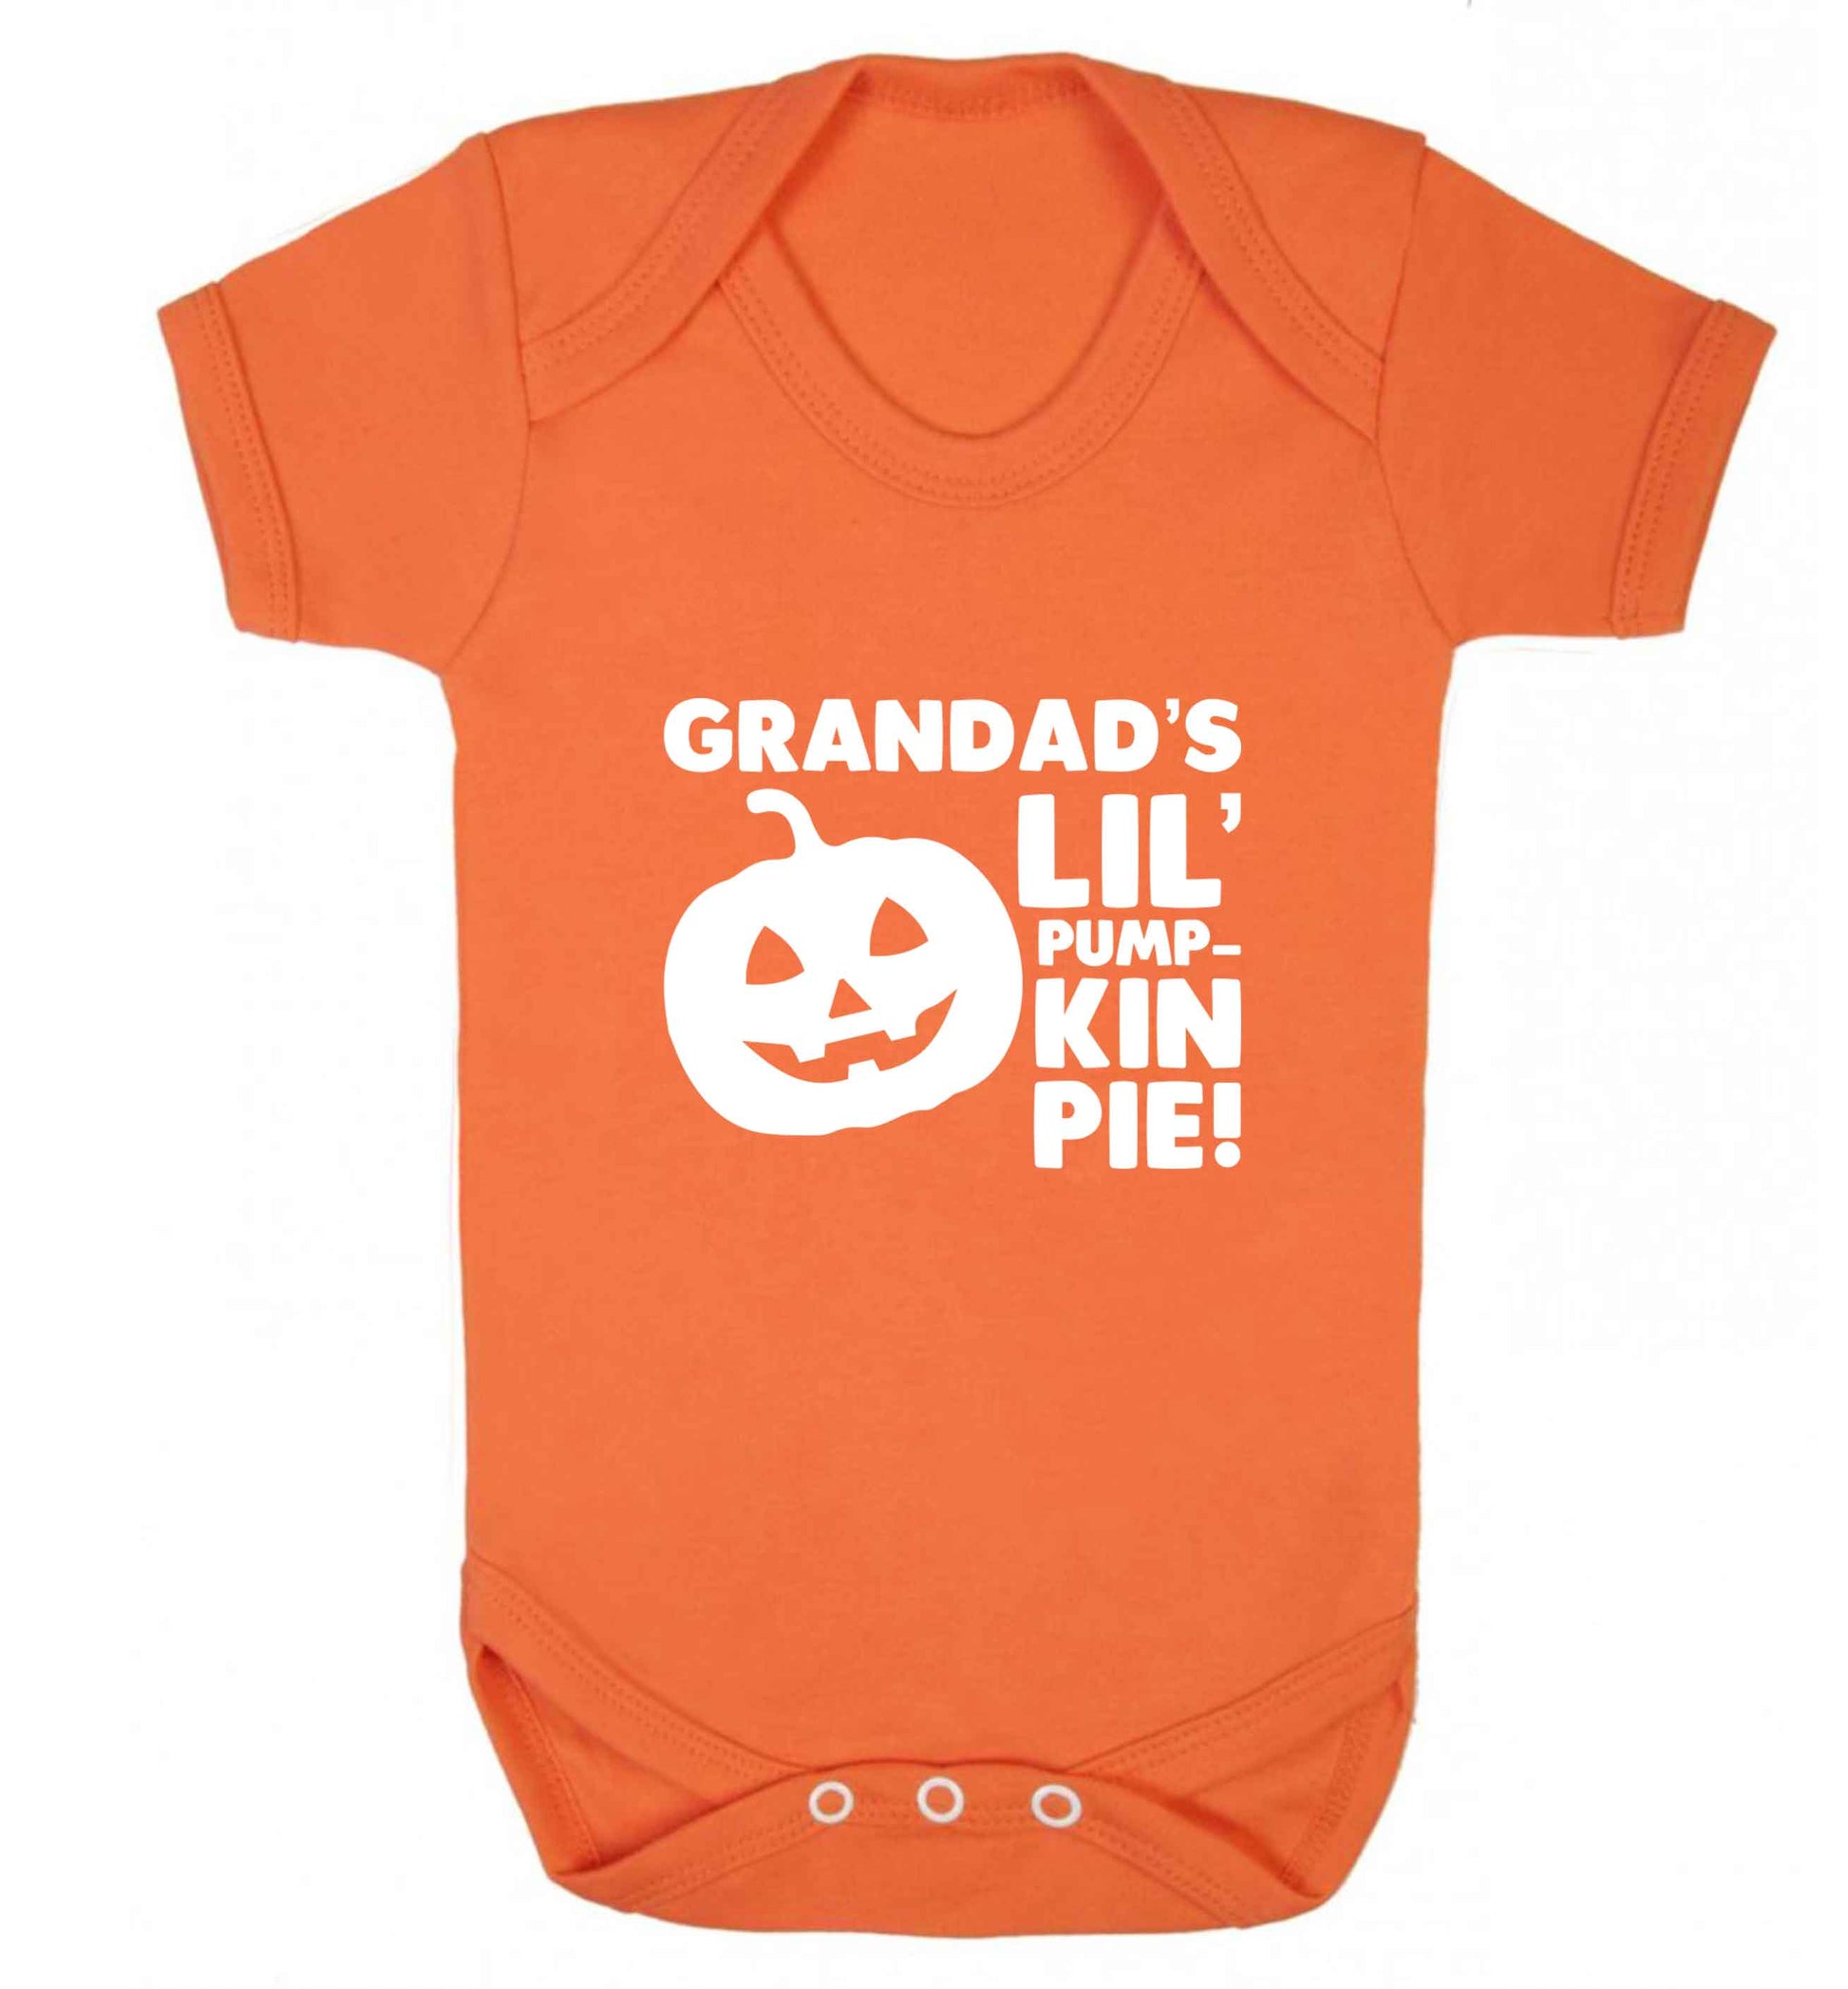 Grandad's lil' pumpkin pie baby vest orange 18-24 months